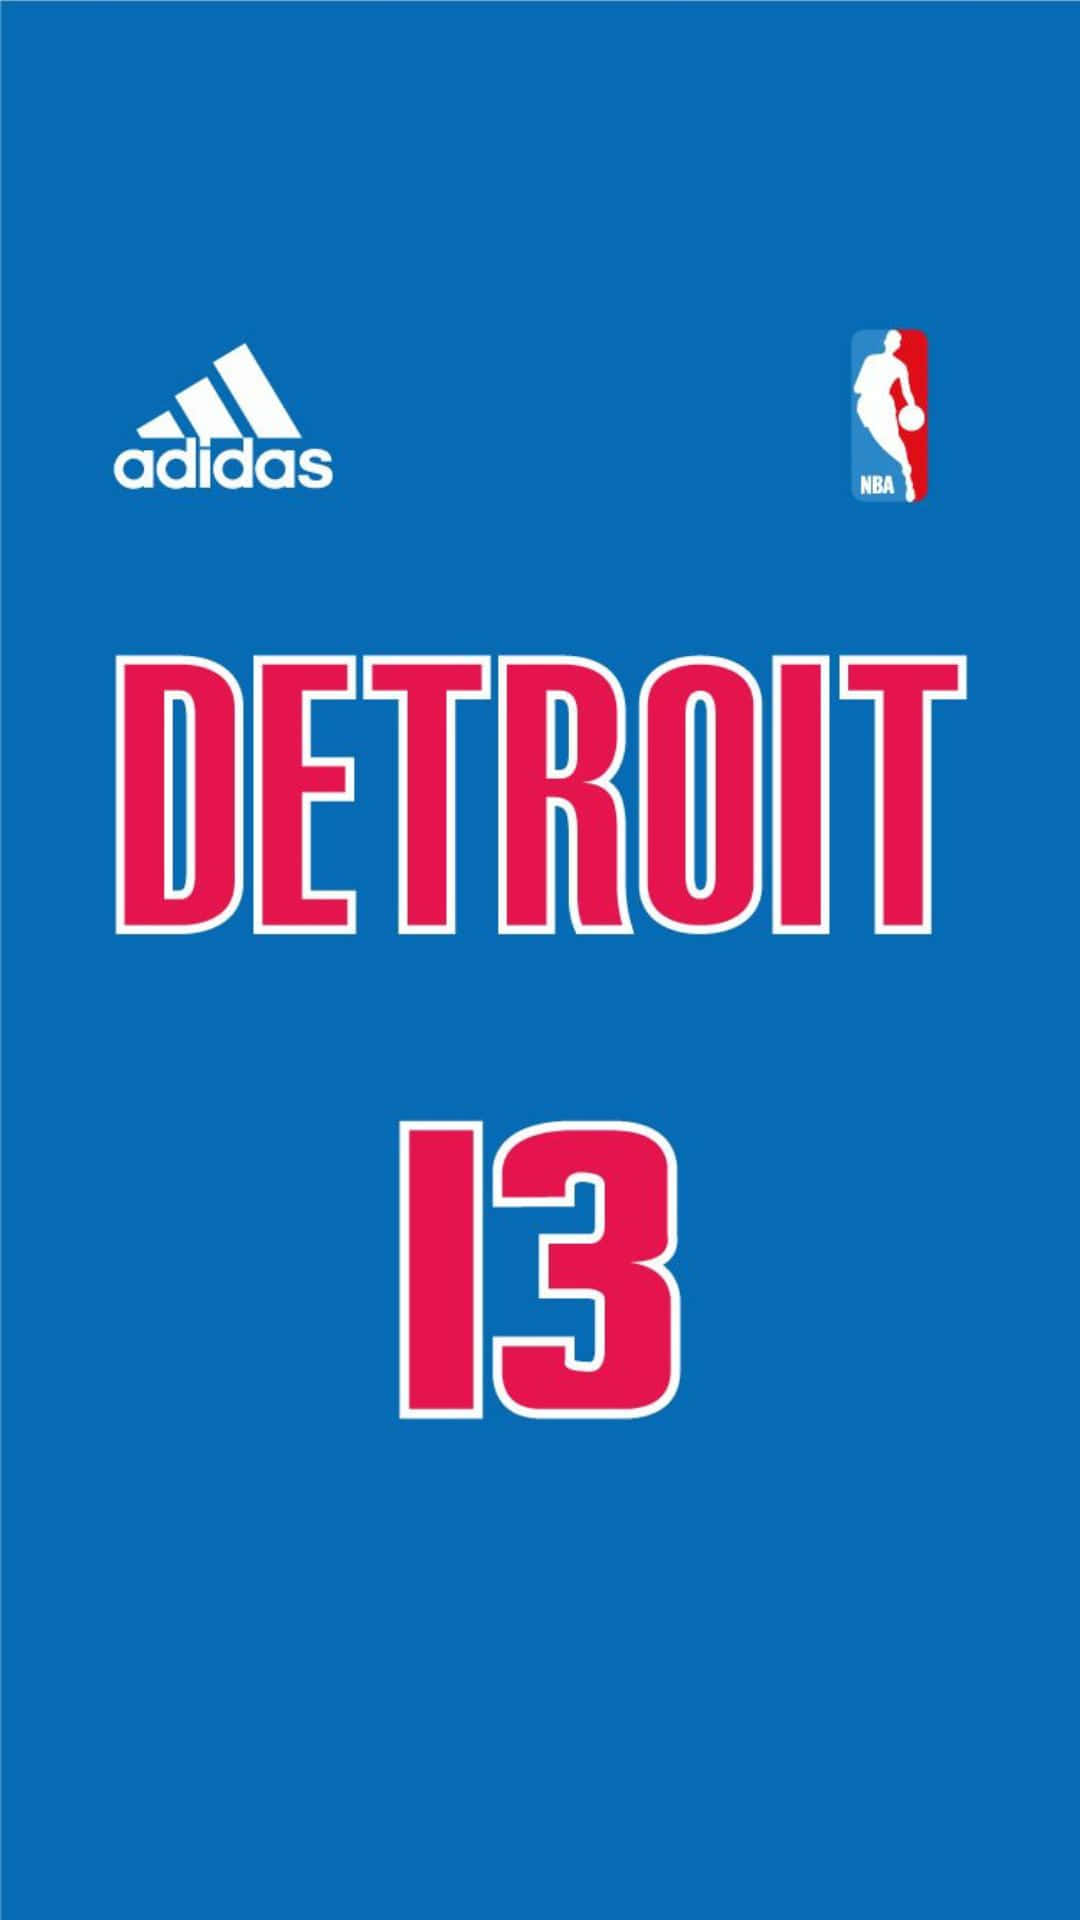 Adidas Detroit N B A Jersey Design Wallpaper